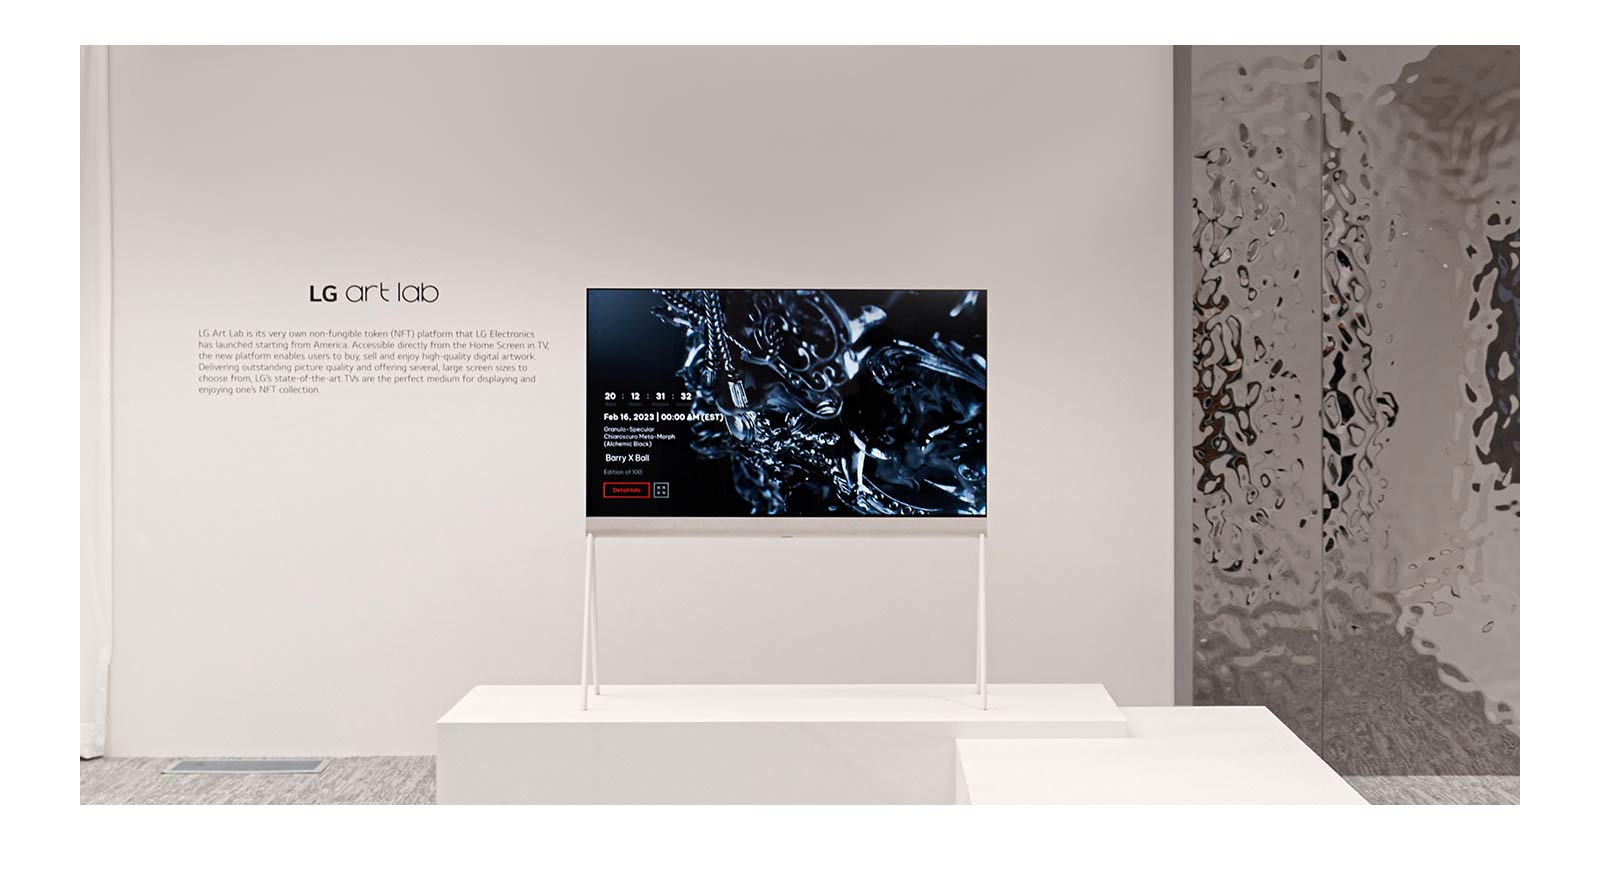 תמונה של הצג Easel בחדר לבן, כשעל המסך מוצגת יצירת אומנות דיגיטלית של פסל שחור. פסל מוחשי כסוף בצד ימין של הטלוויזיה מציג השתקפות של החדר.